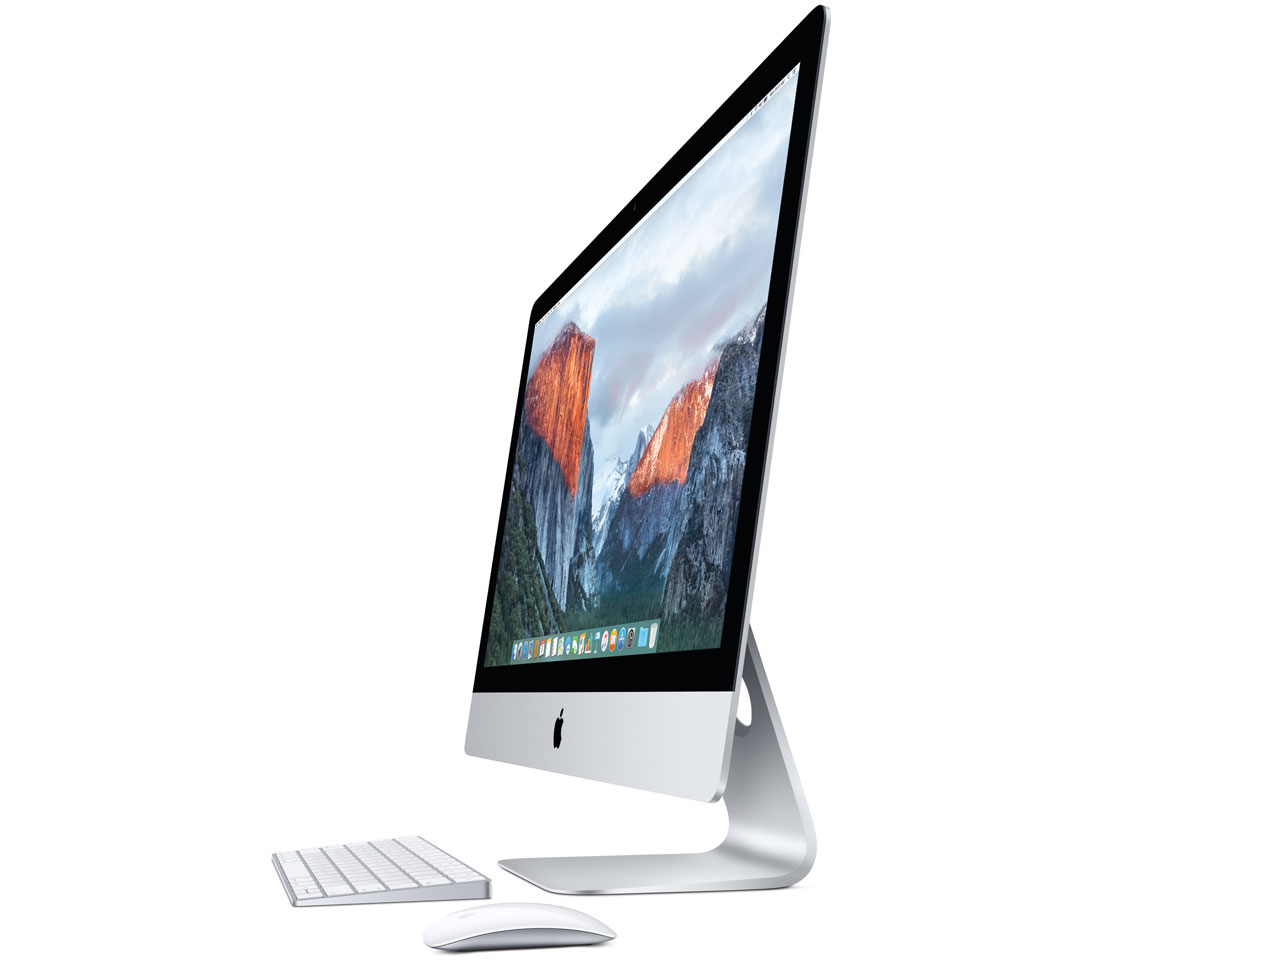 中古iMac Retina 5K intel Core i5 3.2GHz(4コア) 27インチ Silver OS10.13 起動モデル (2015/10)MK462J/A